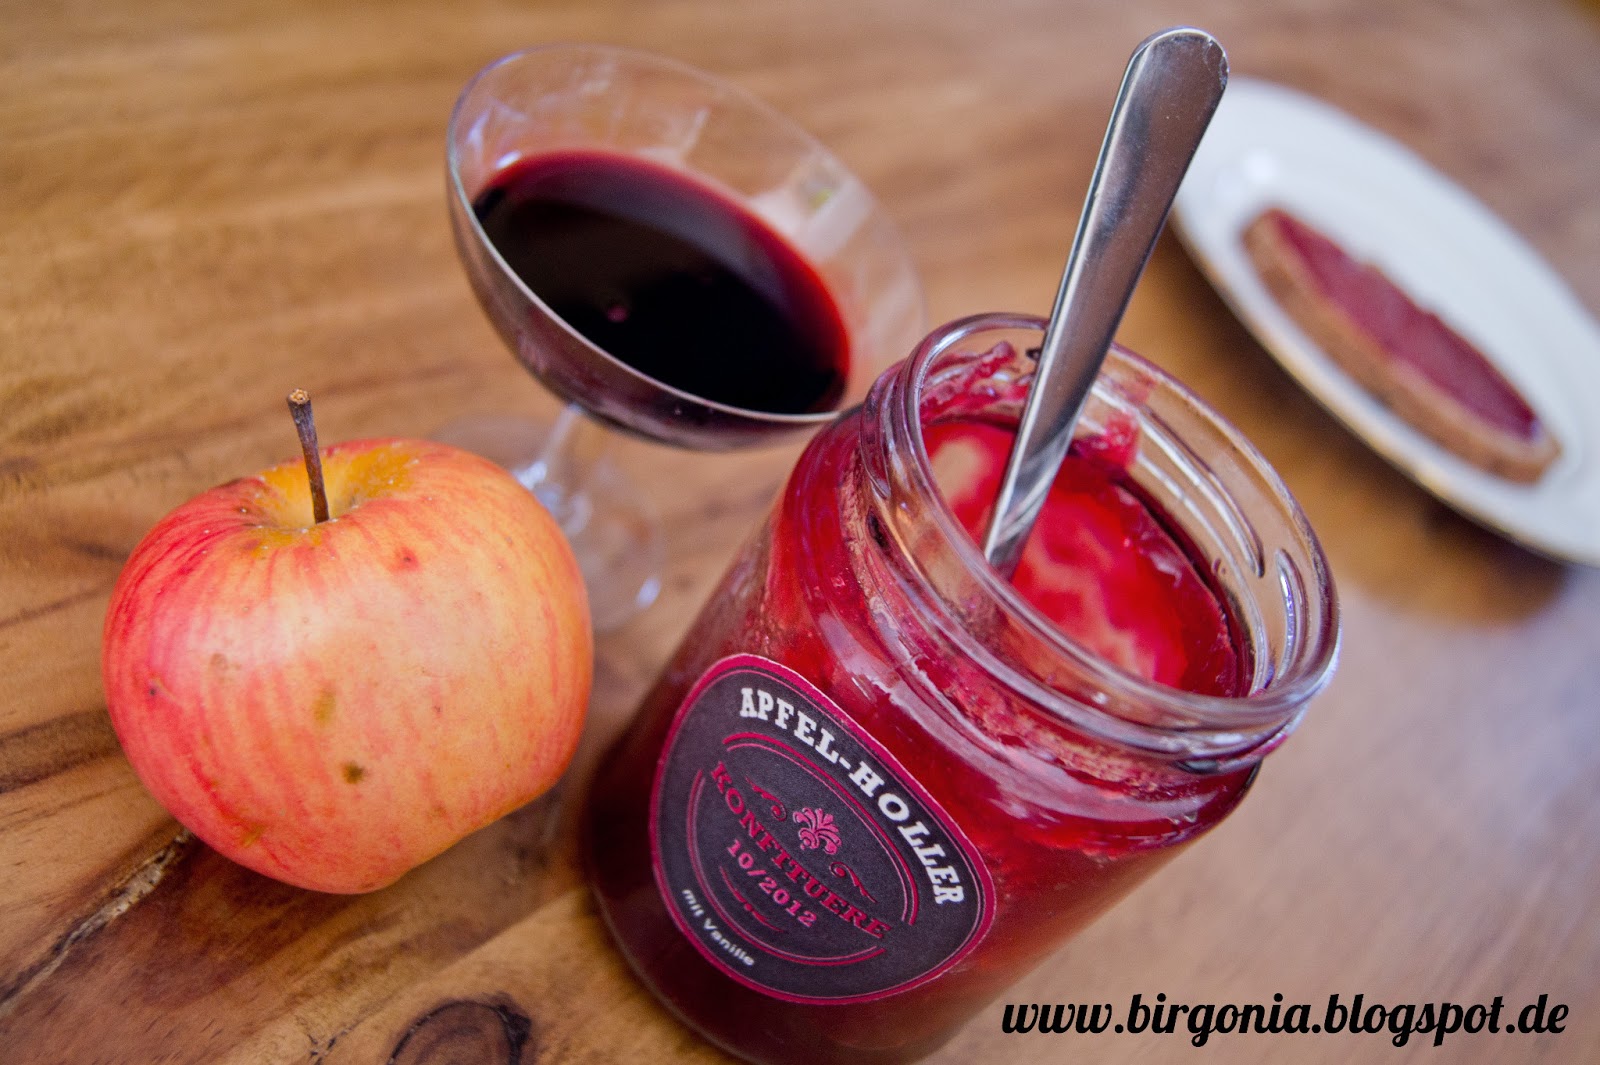 birgonia: Apfel-Holunderbeeren-Konfitüre mit Vanille